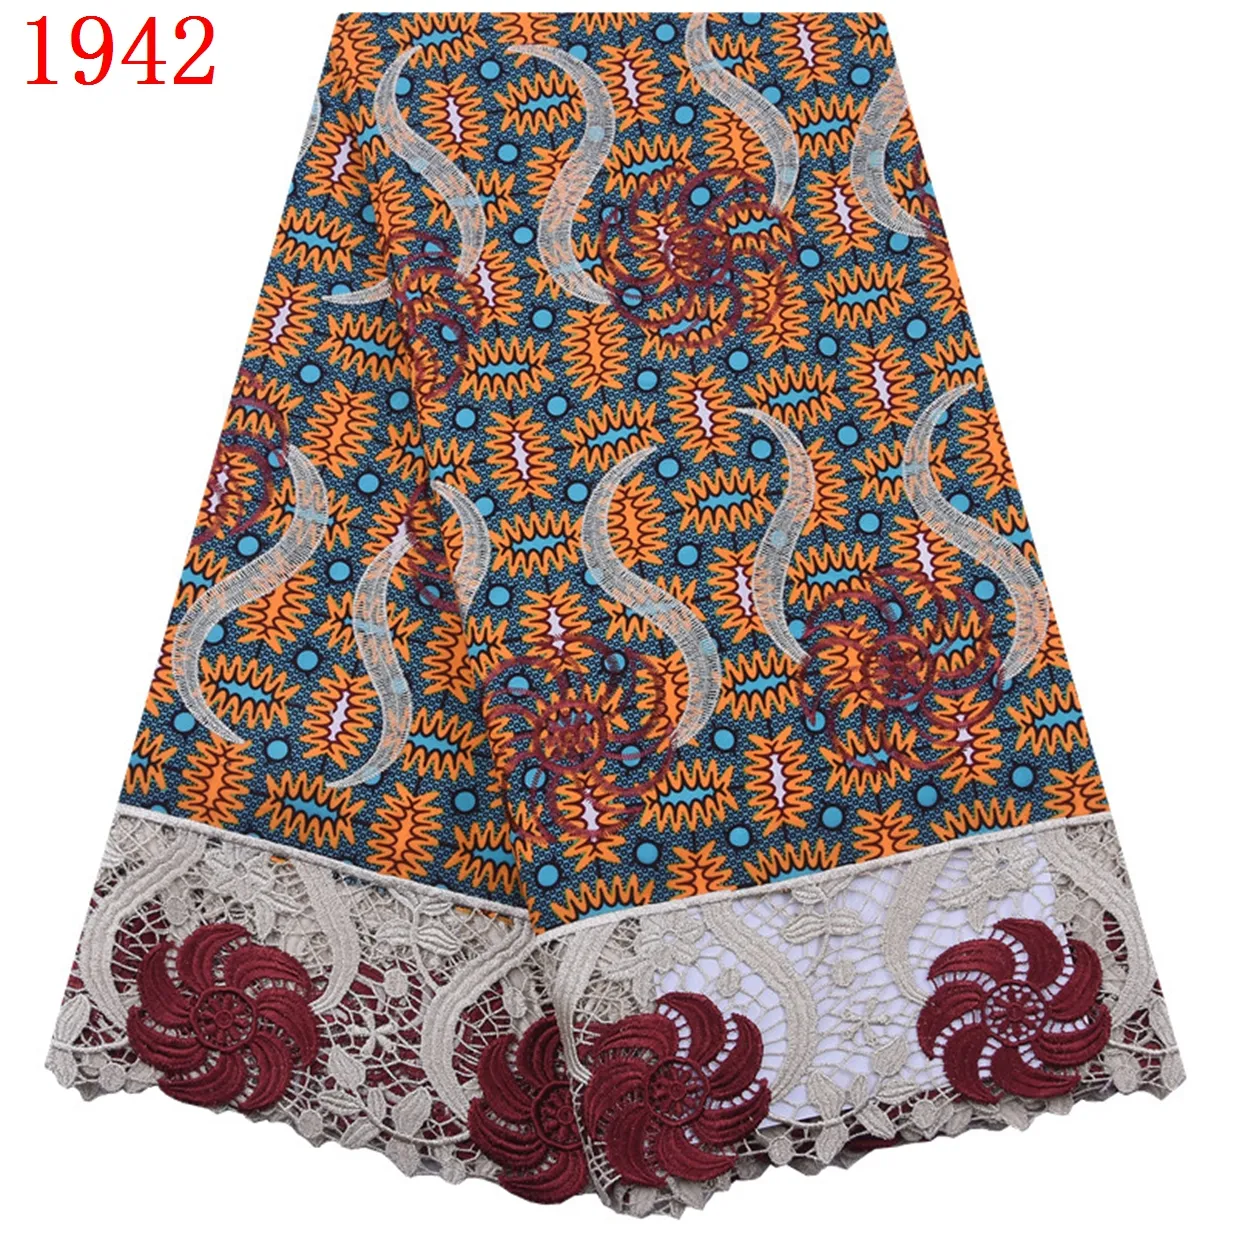 Новое поступление, воск с вышивкой с принтом Анкары, горячая Распродажа, африканская анкарская ткань с вышивкой камнями, ткань с химическим воском 1942